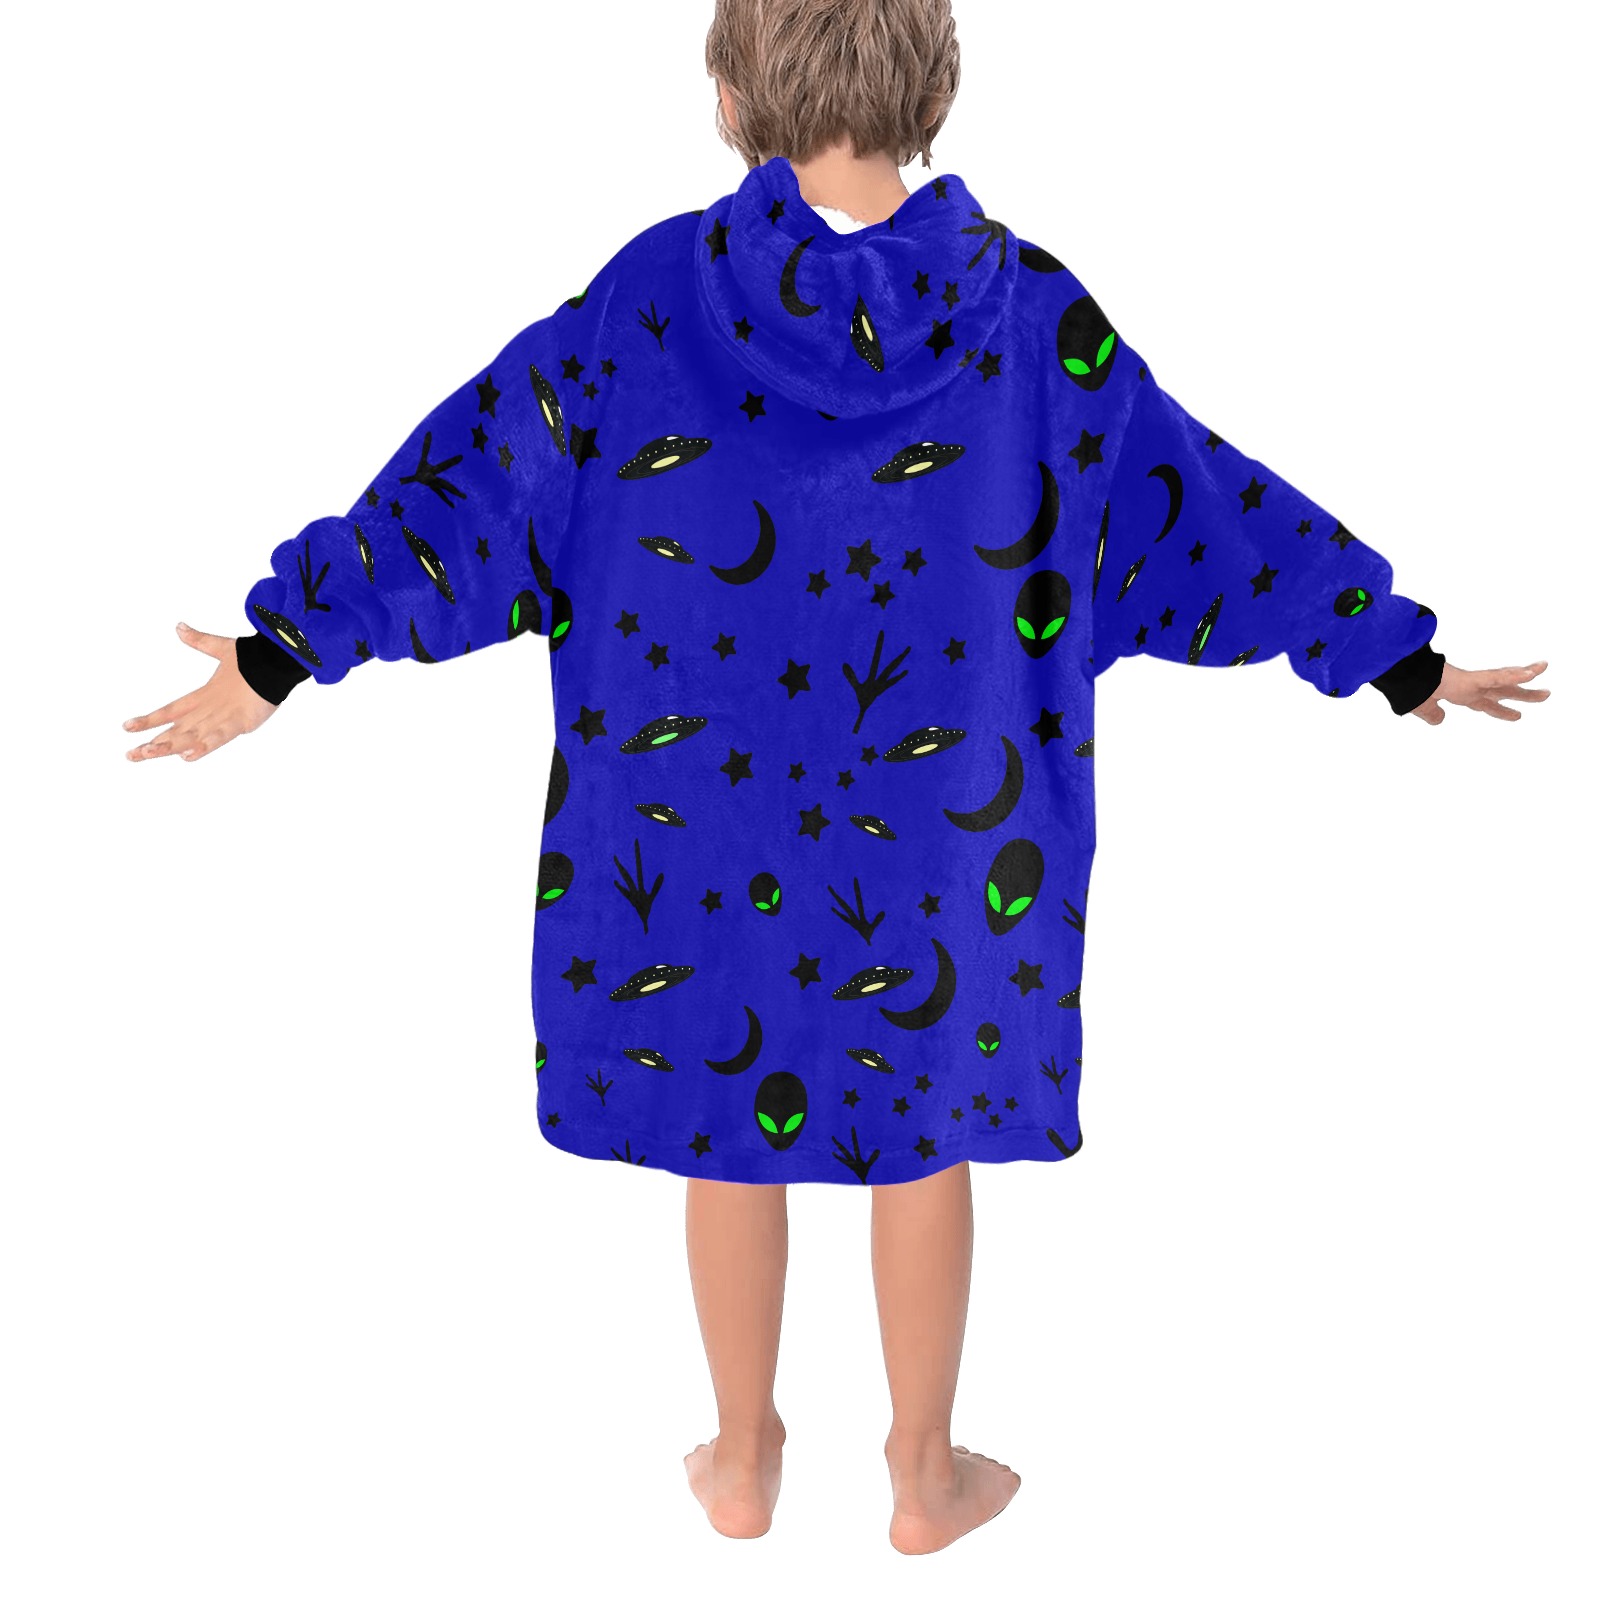 Aliens and Spaceships - Blue Blanket Hoodie for Kids